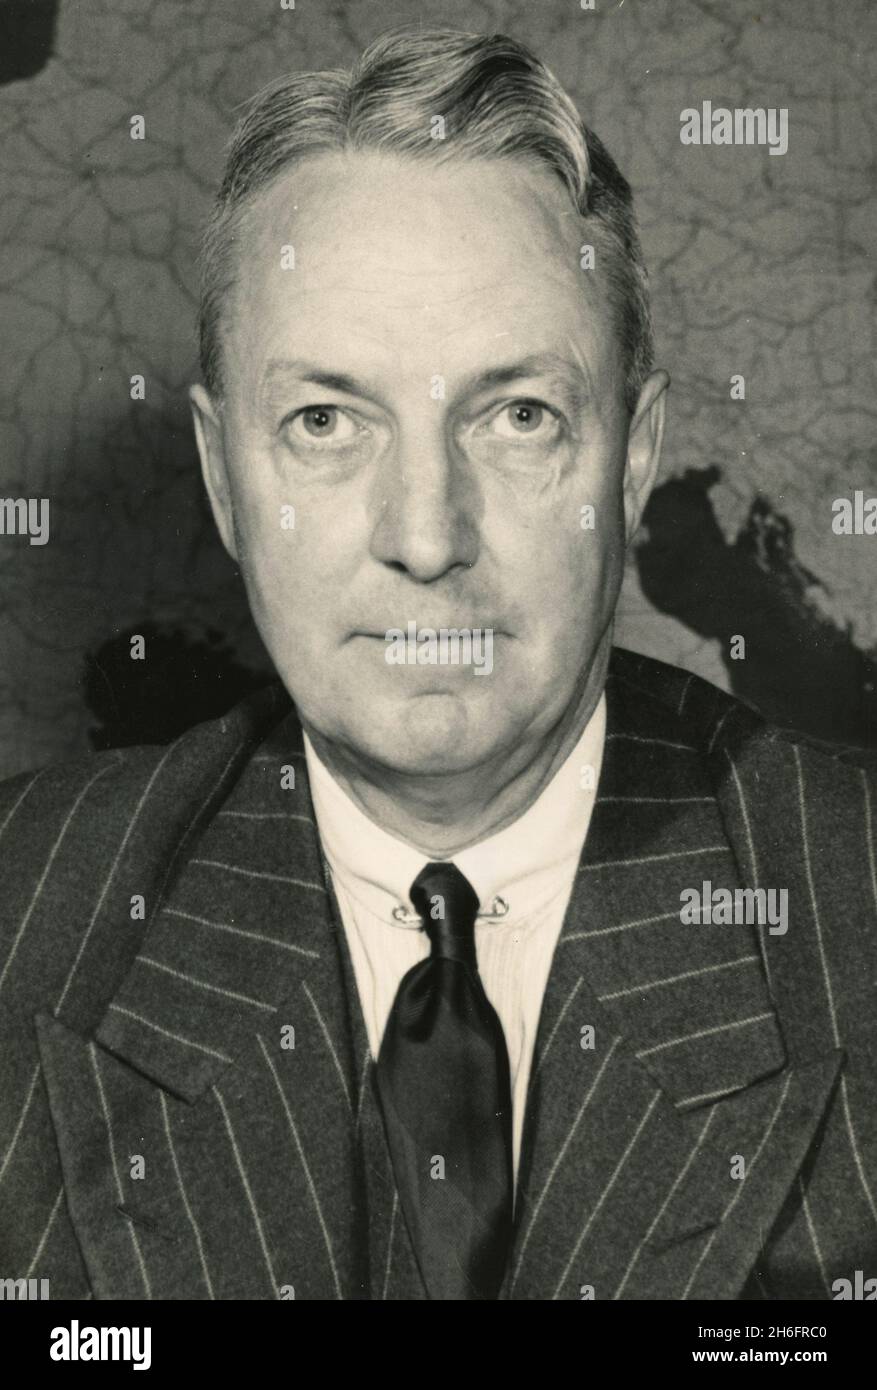 Diplomático estadounidense David K. E. Bruce, Embajador de los Estados Unidos en Francia, Estados Unidos 1947 Foto de stock